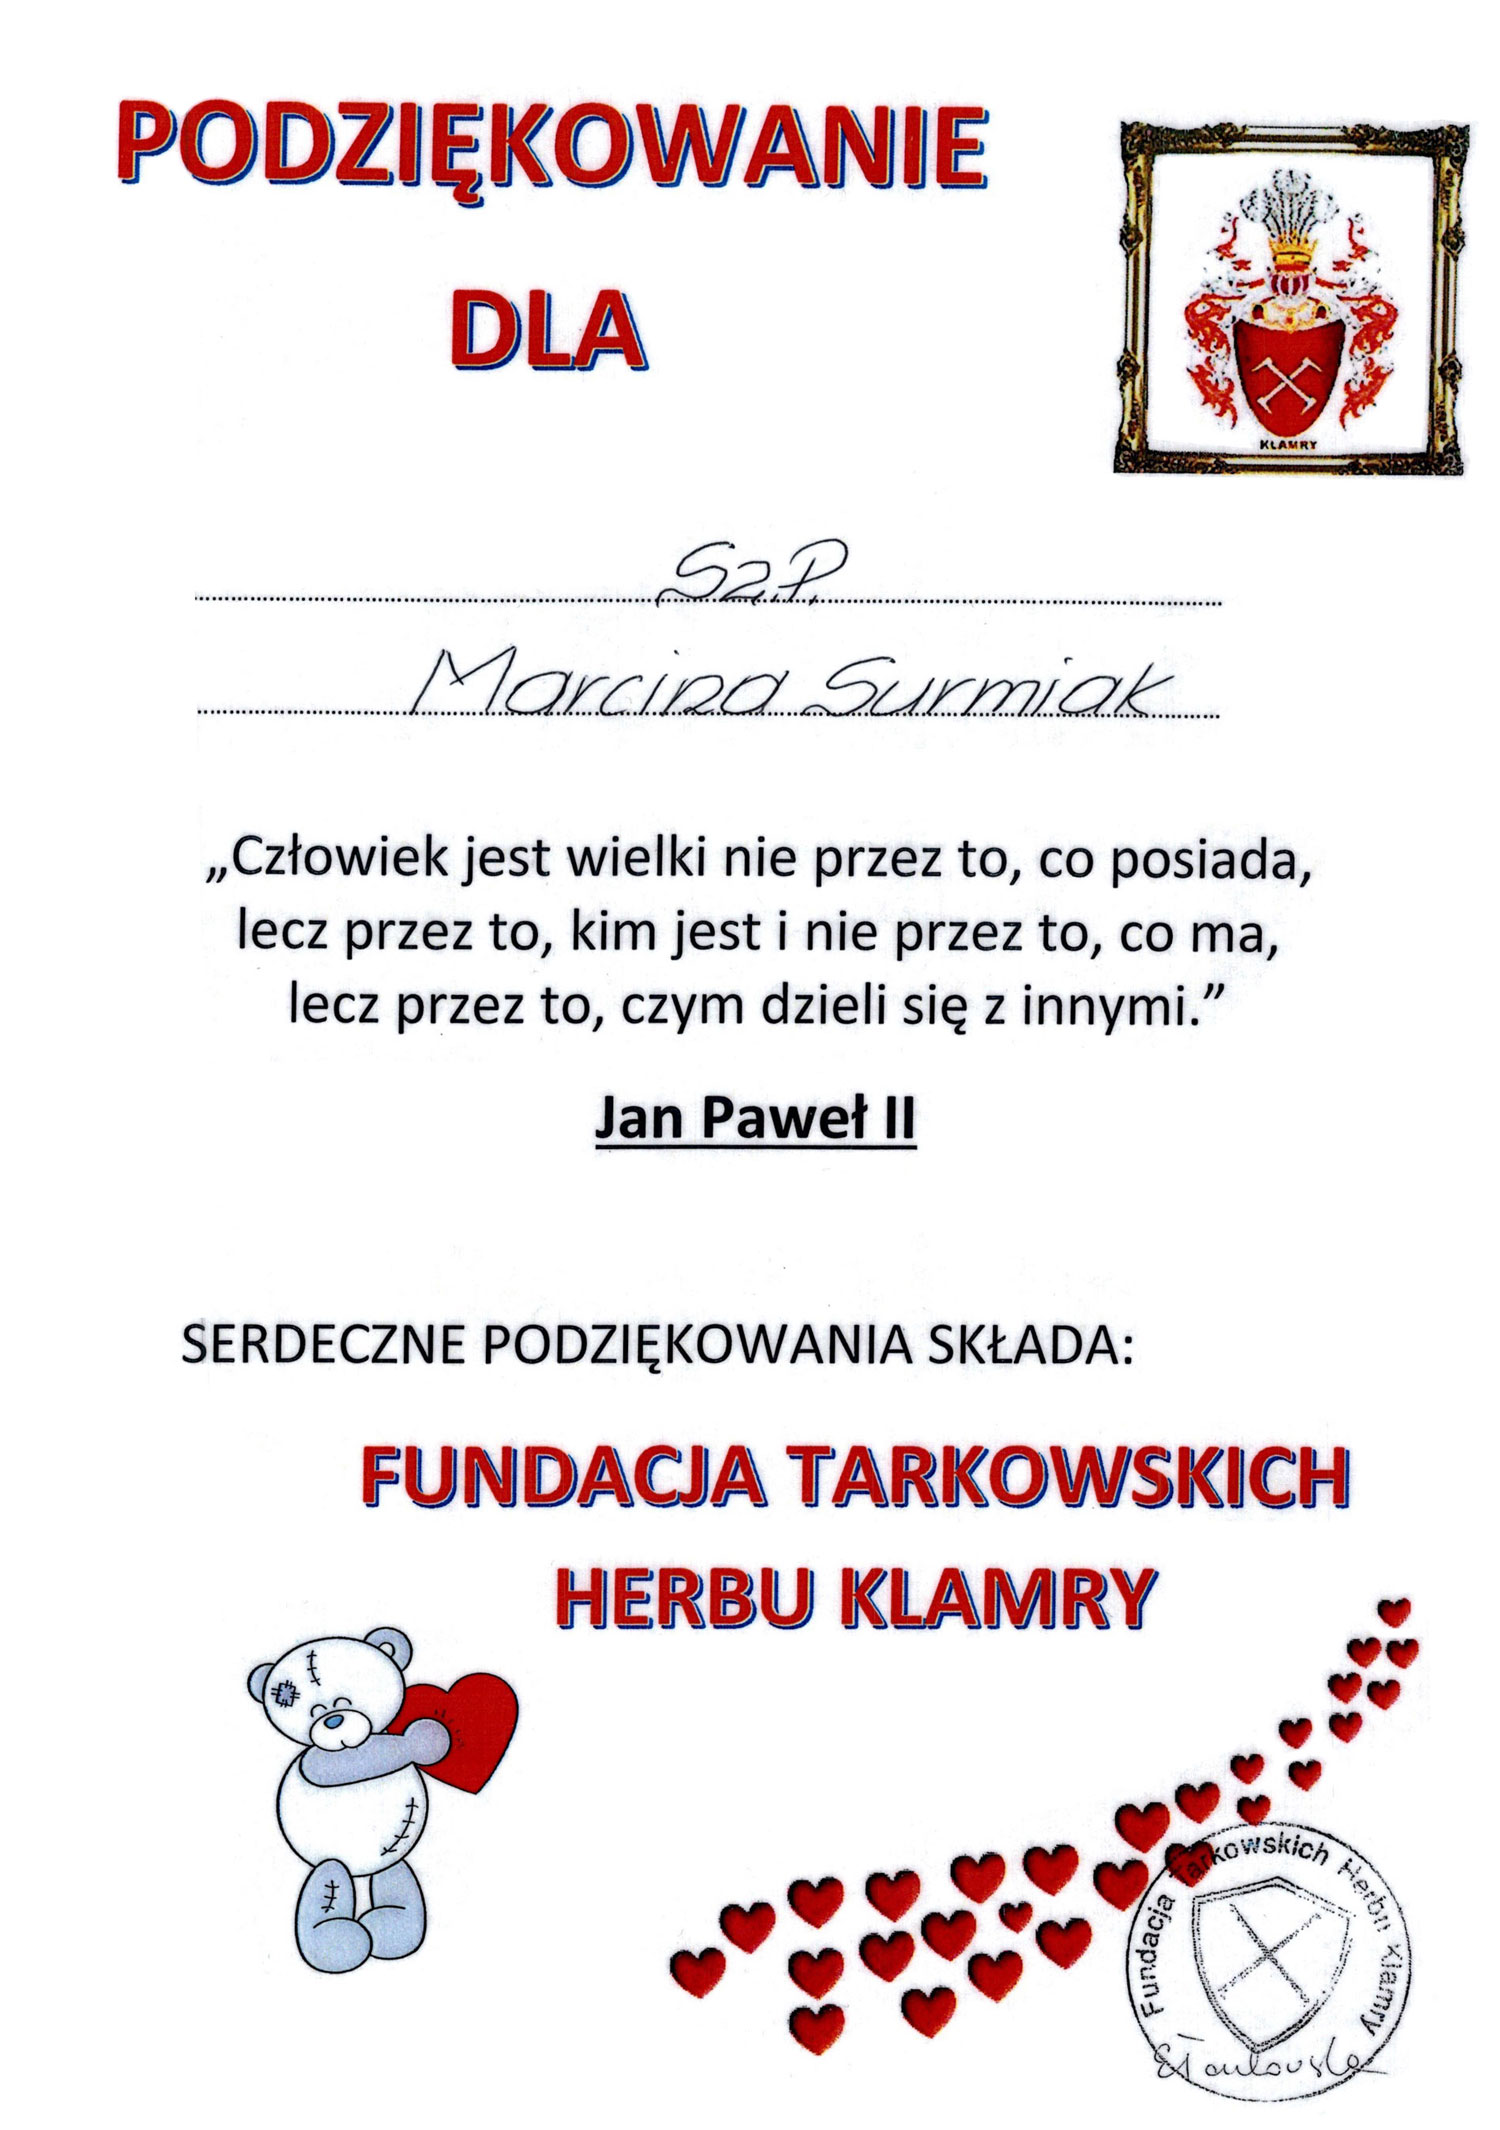 dyplom od Fundacji Tarkowskich